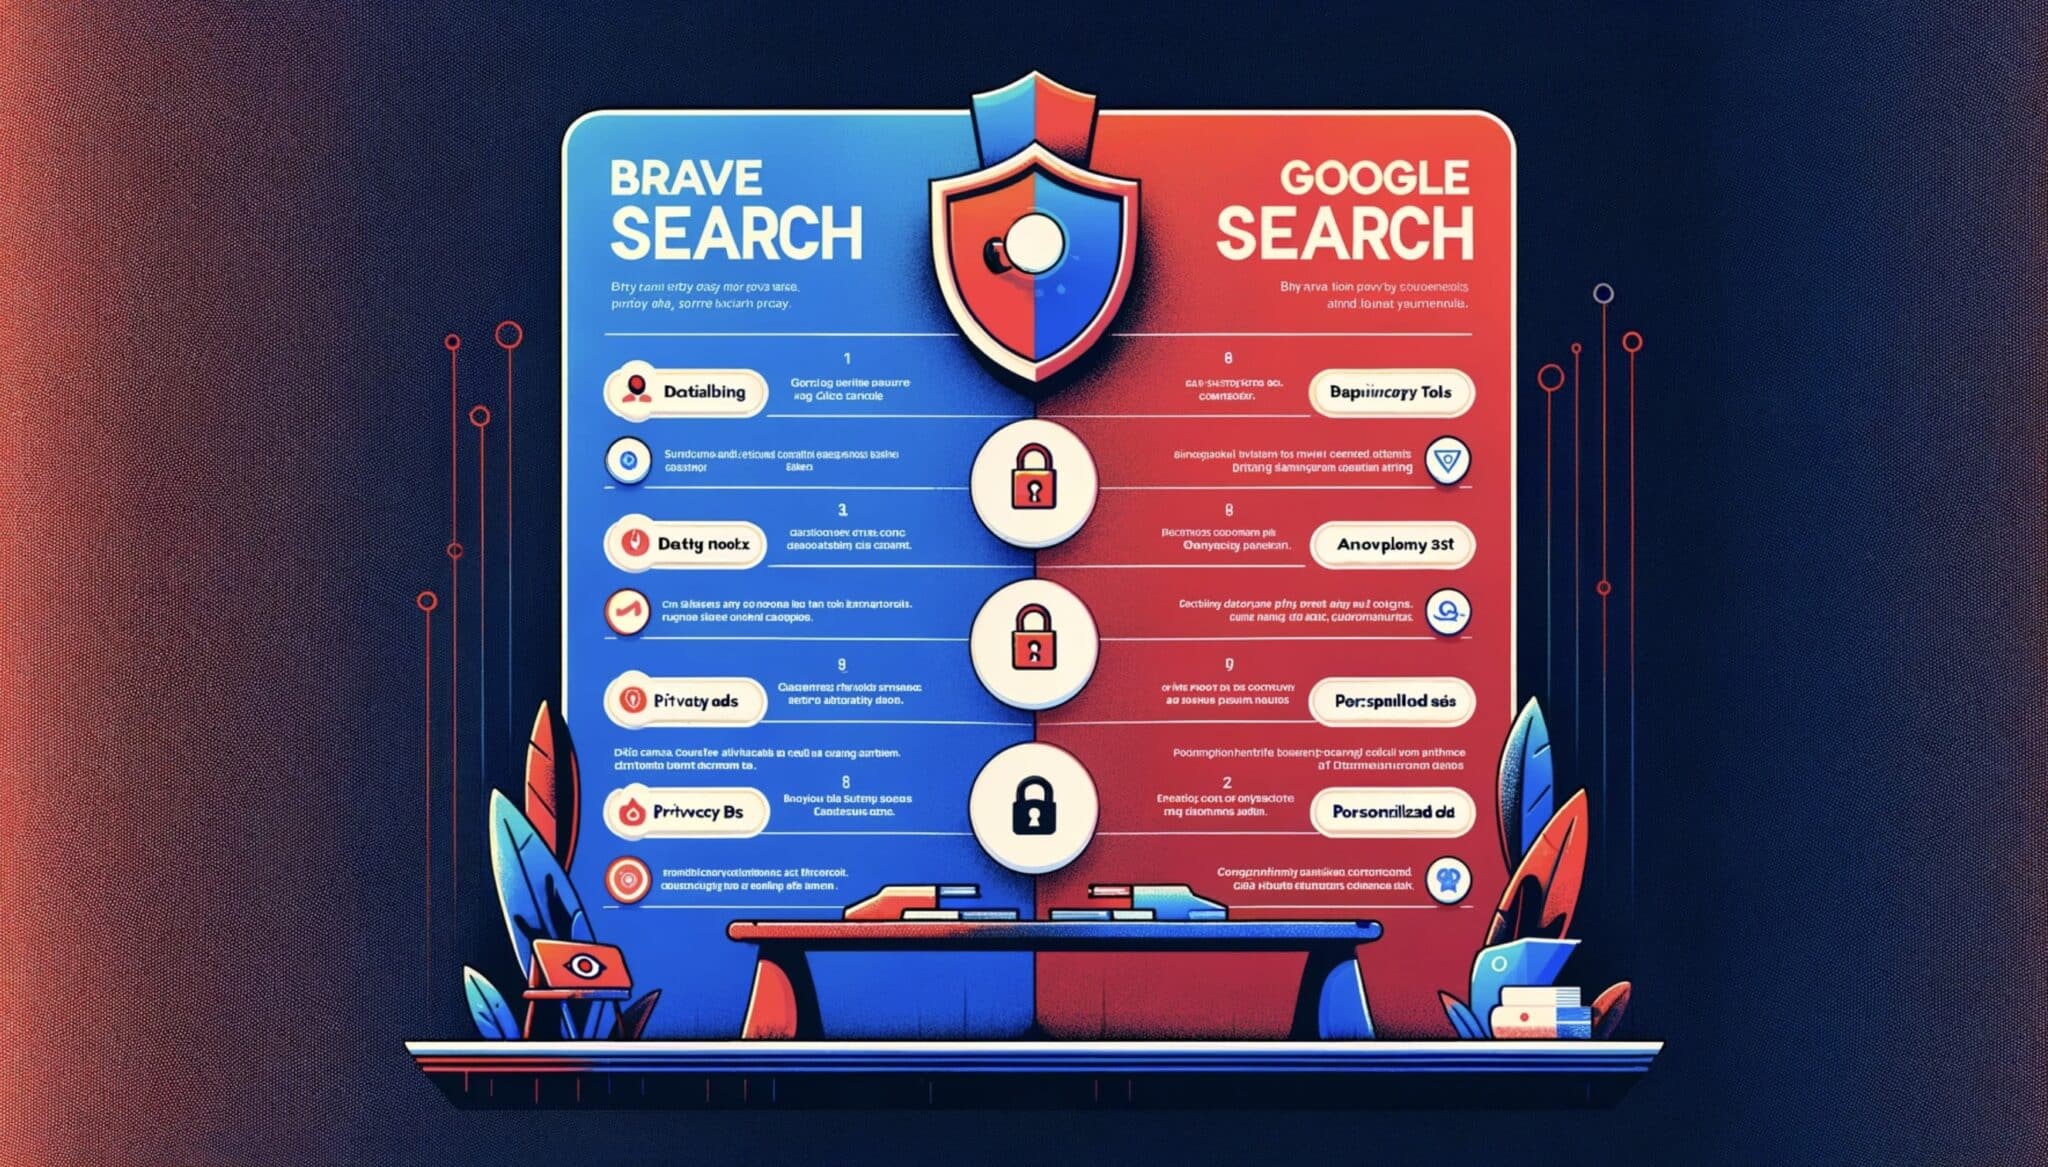 Bagaimana Brave Search Dibandingkan dengan Google dalam Melindungi Data Pribadi?